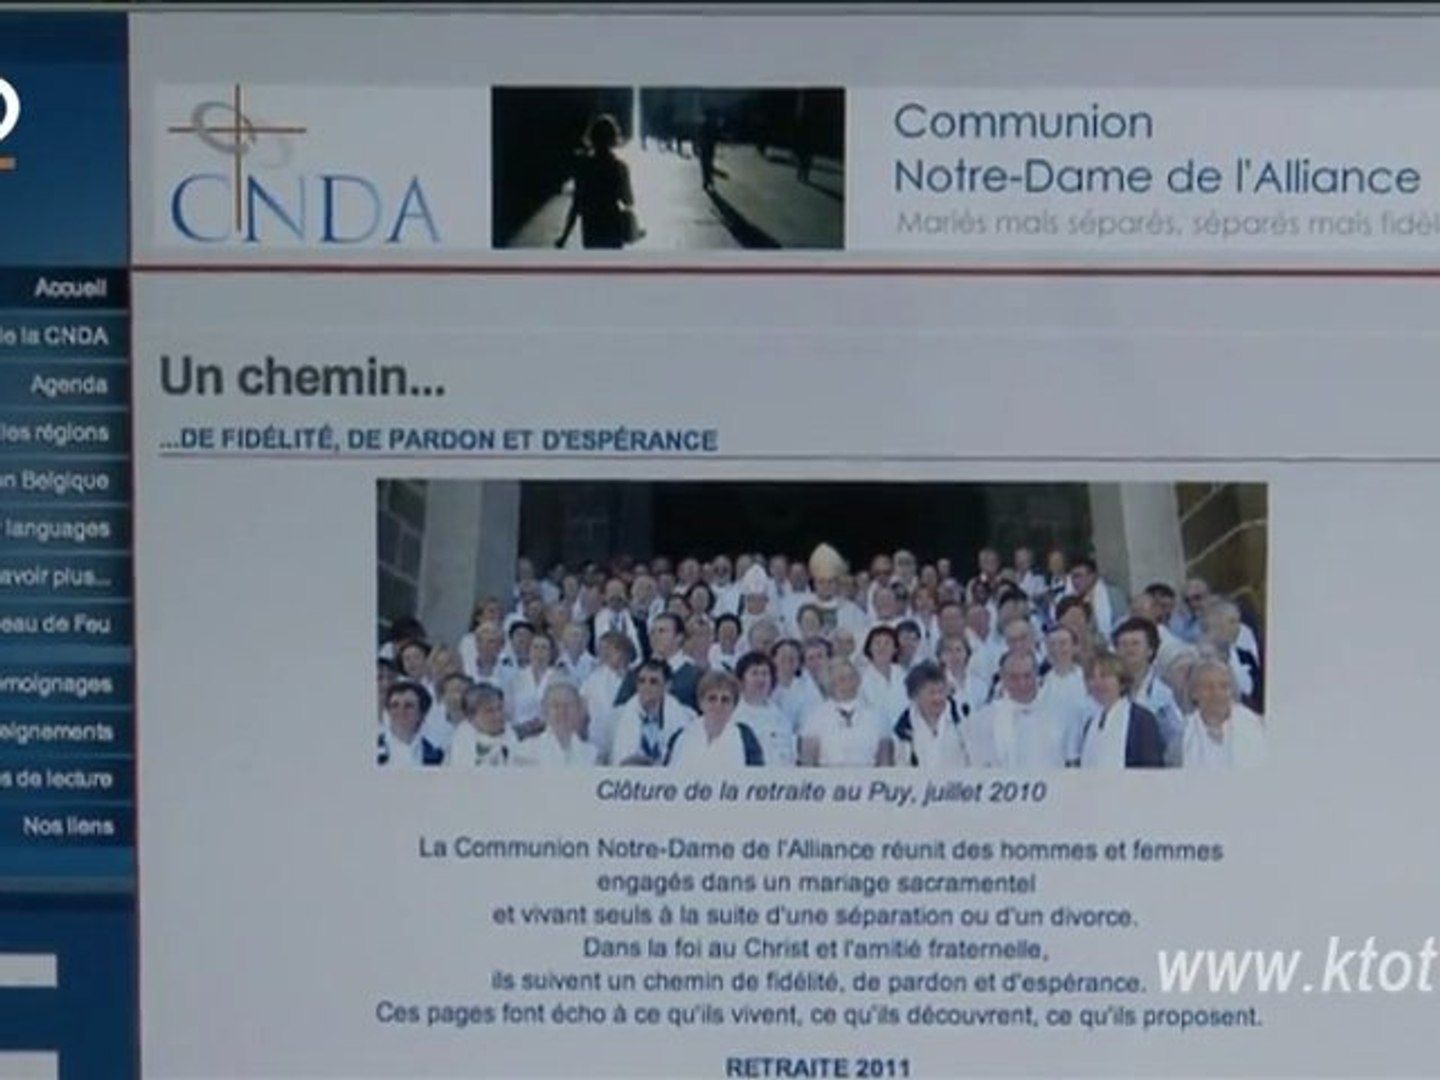 Communion Notre-Dame de l'Alliance - Vidéo Dailymotion